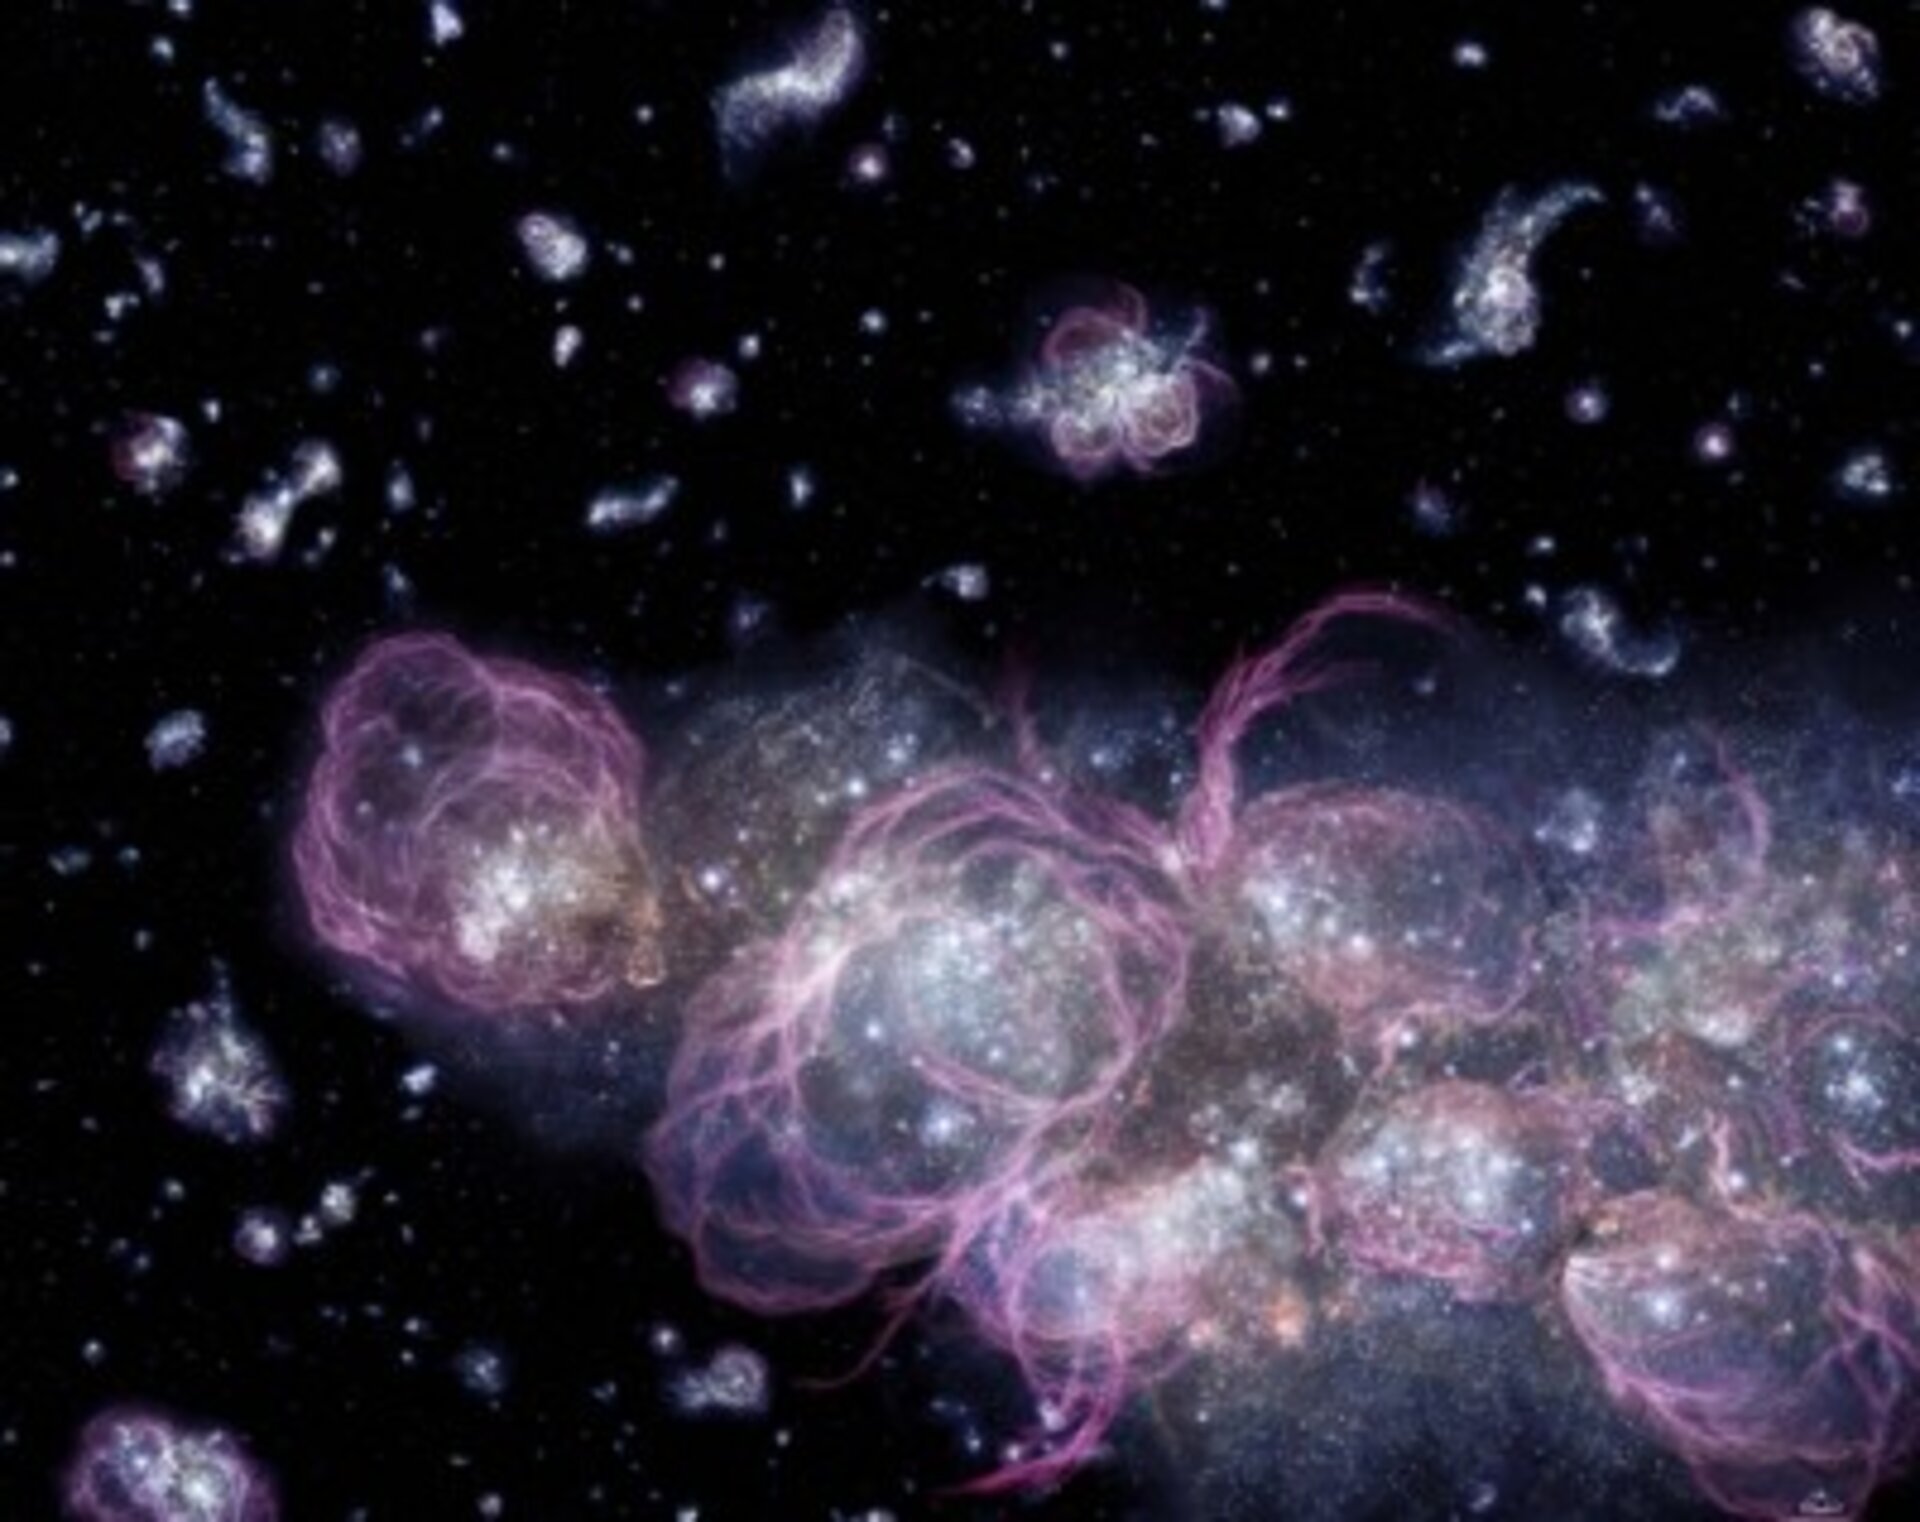 I det tidiga universum var stjärnbildningen oerhört intensiv och supernovor exploderade ständigt